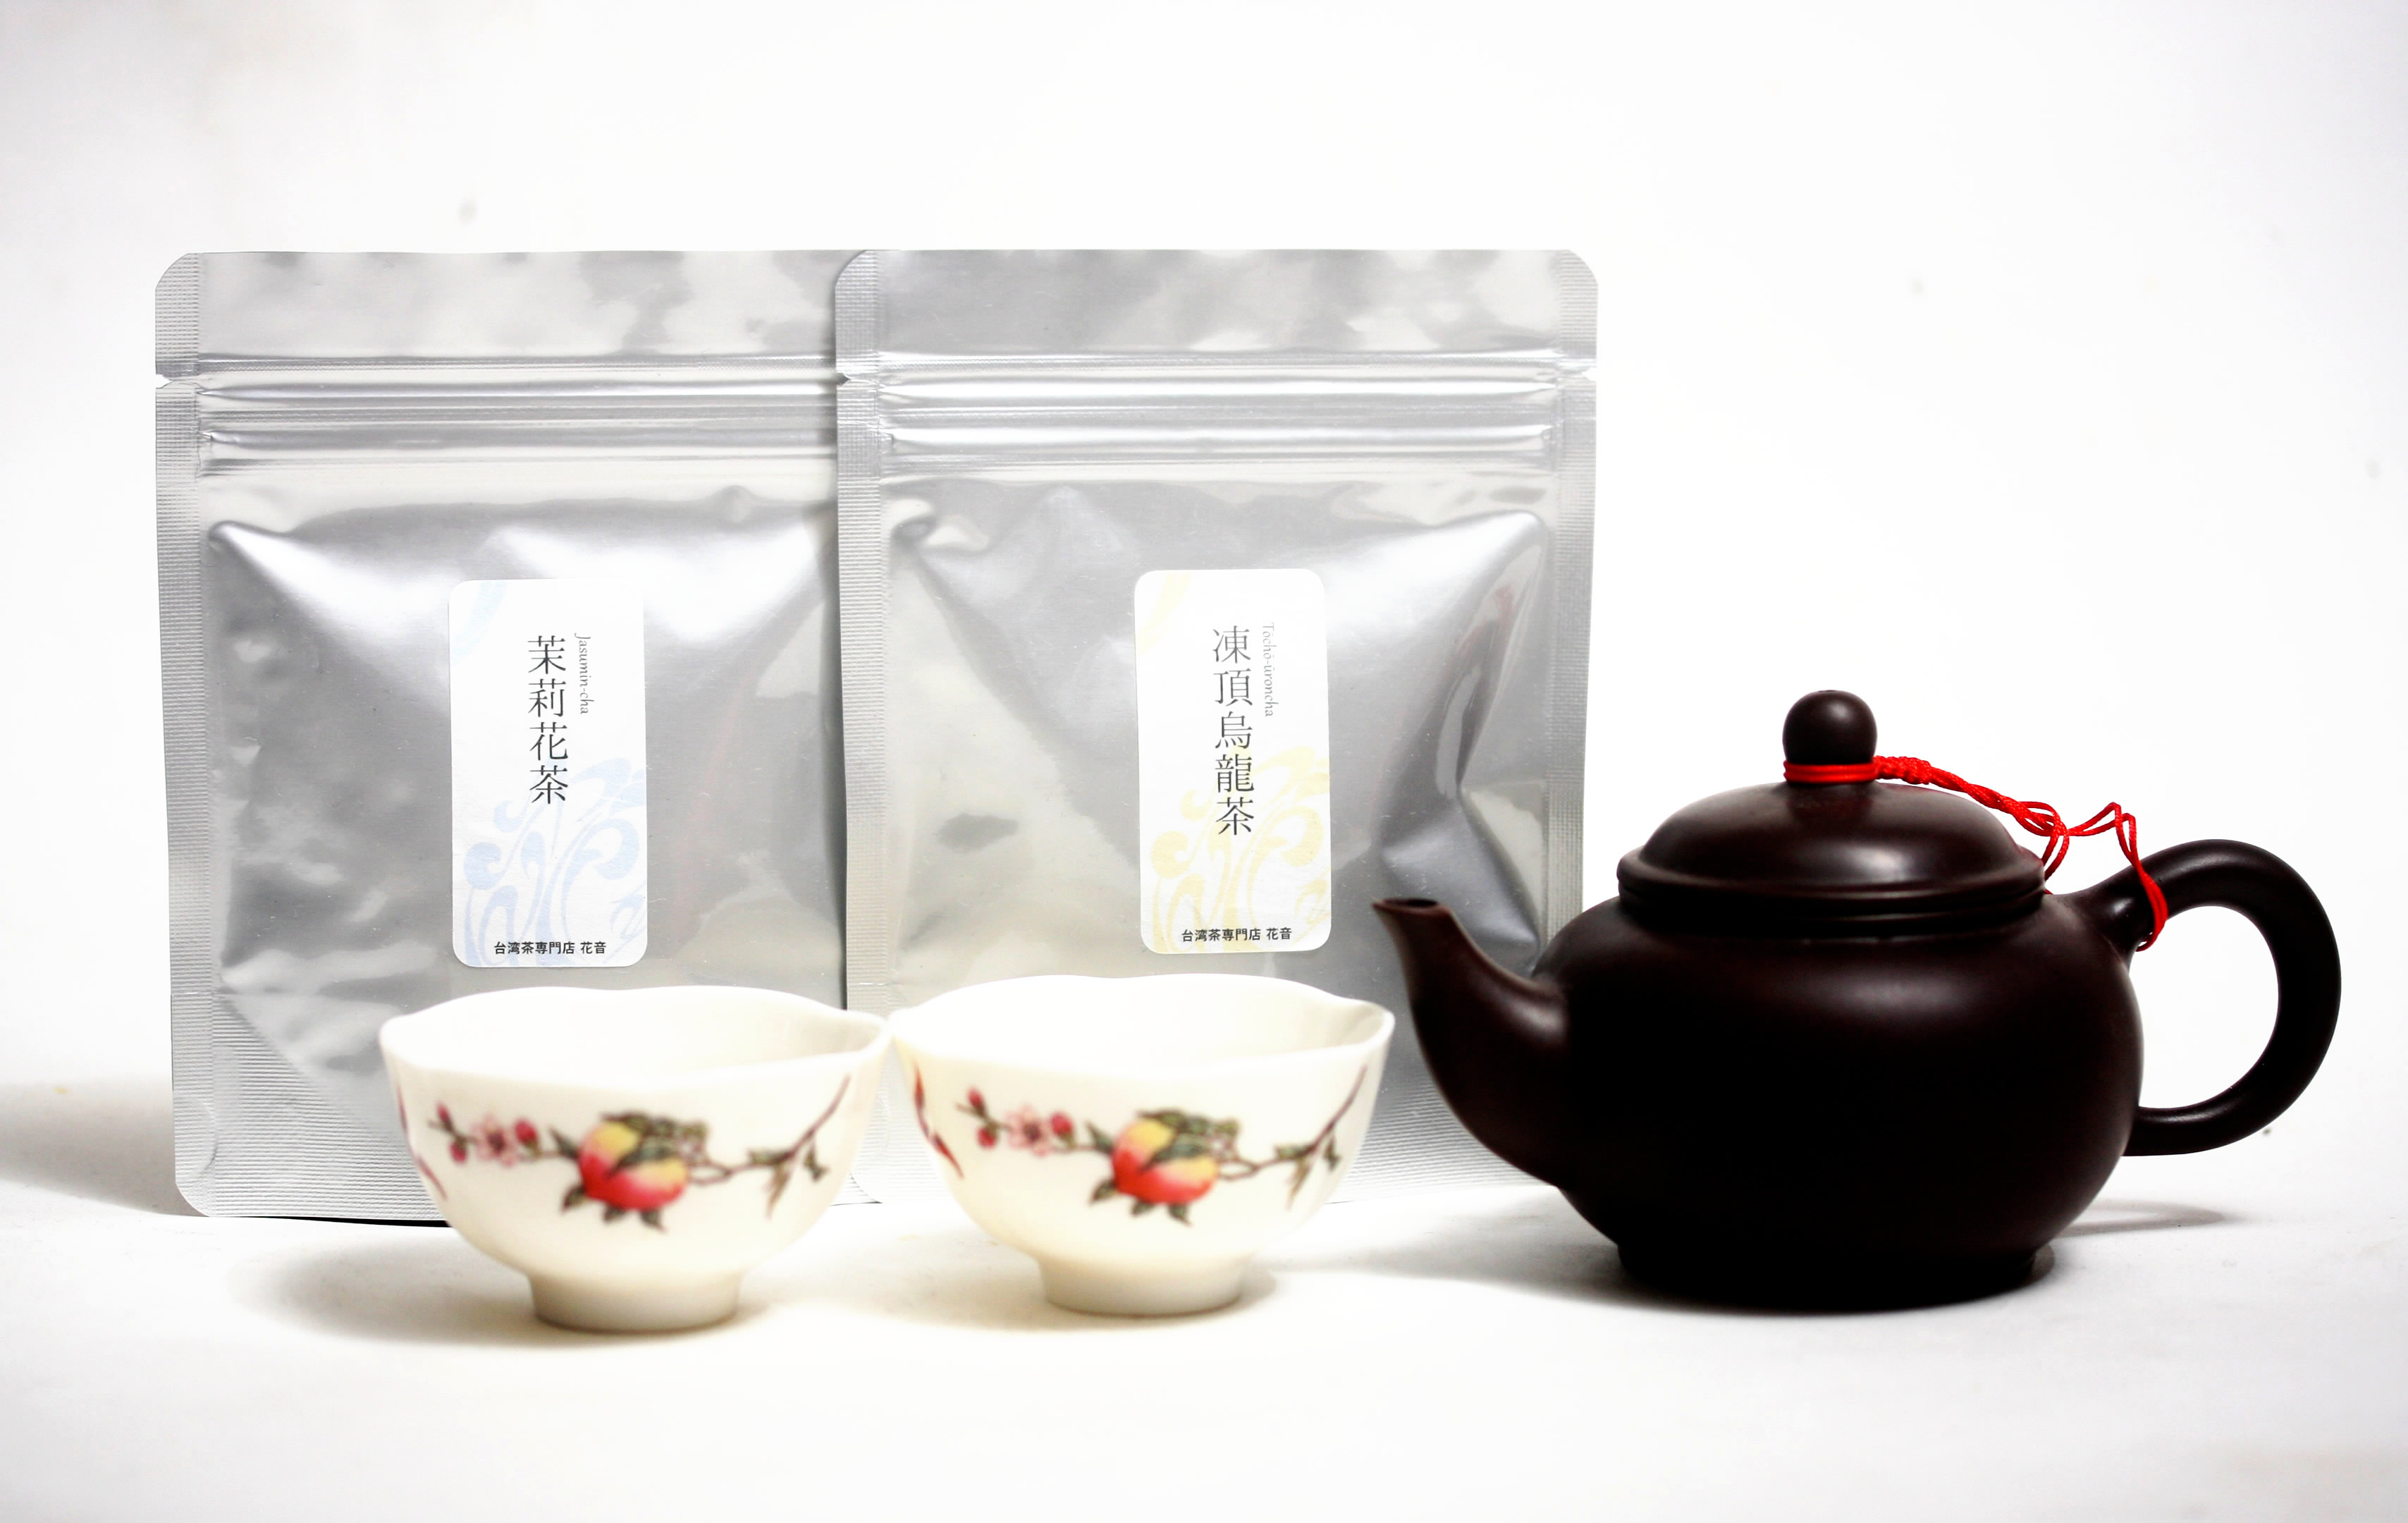 お籠り時間を豊かに！家族で楽しむ台湾茶のお試し入門セットが出来ました！